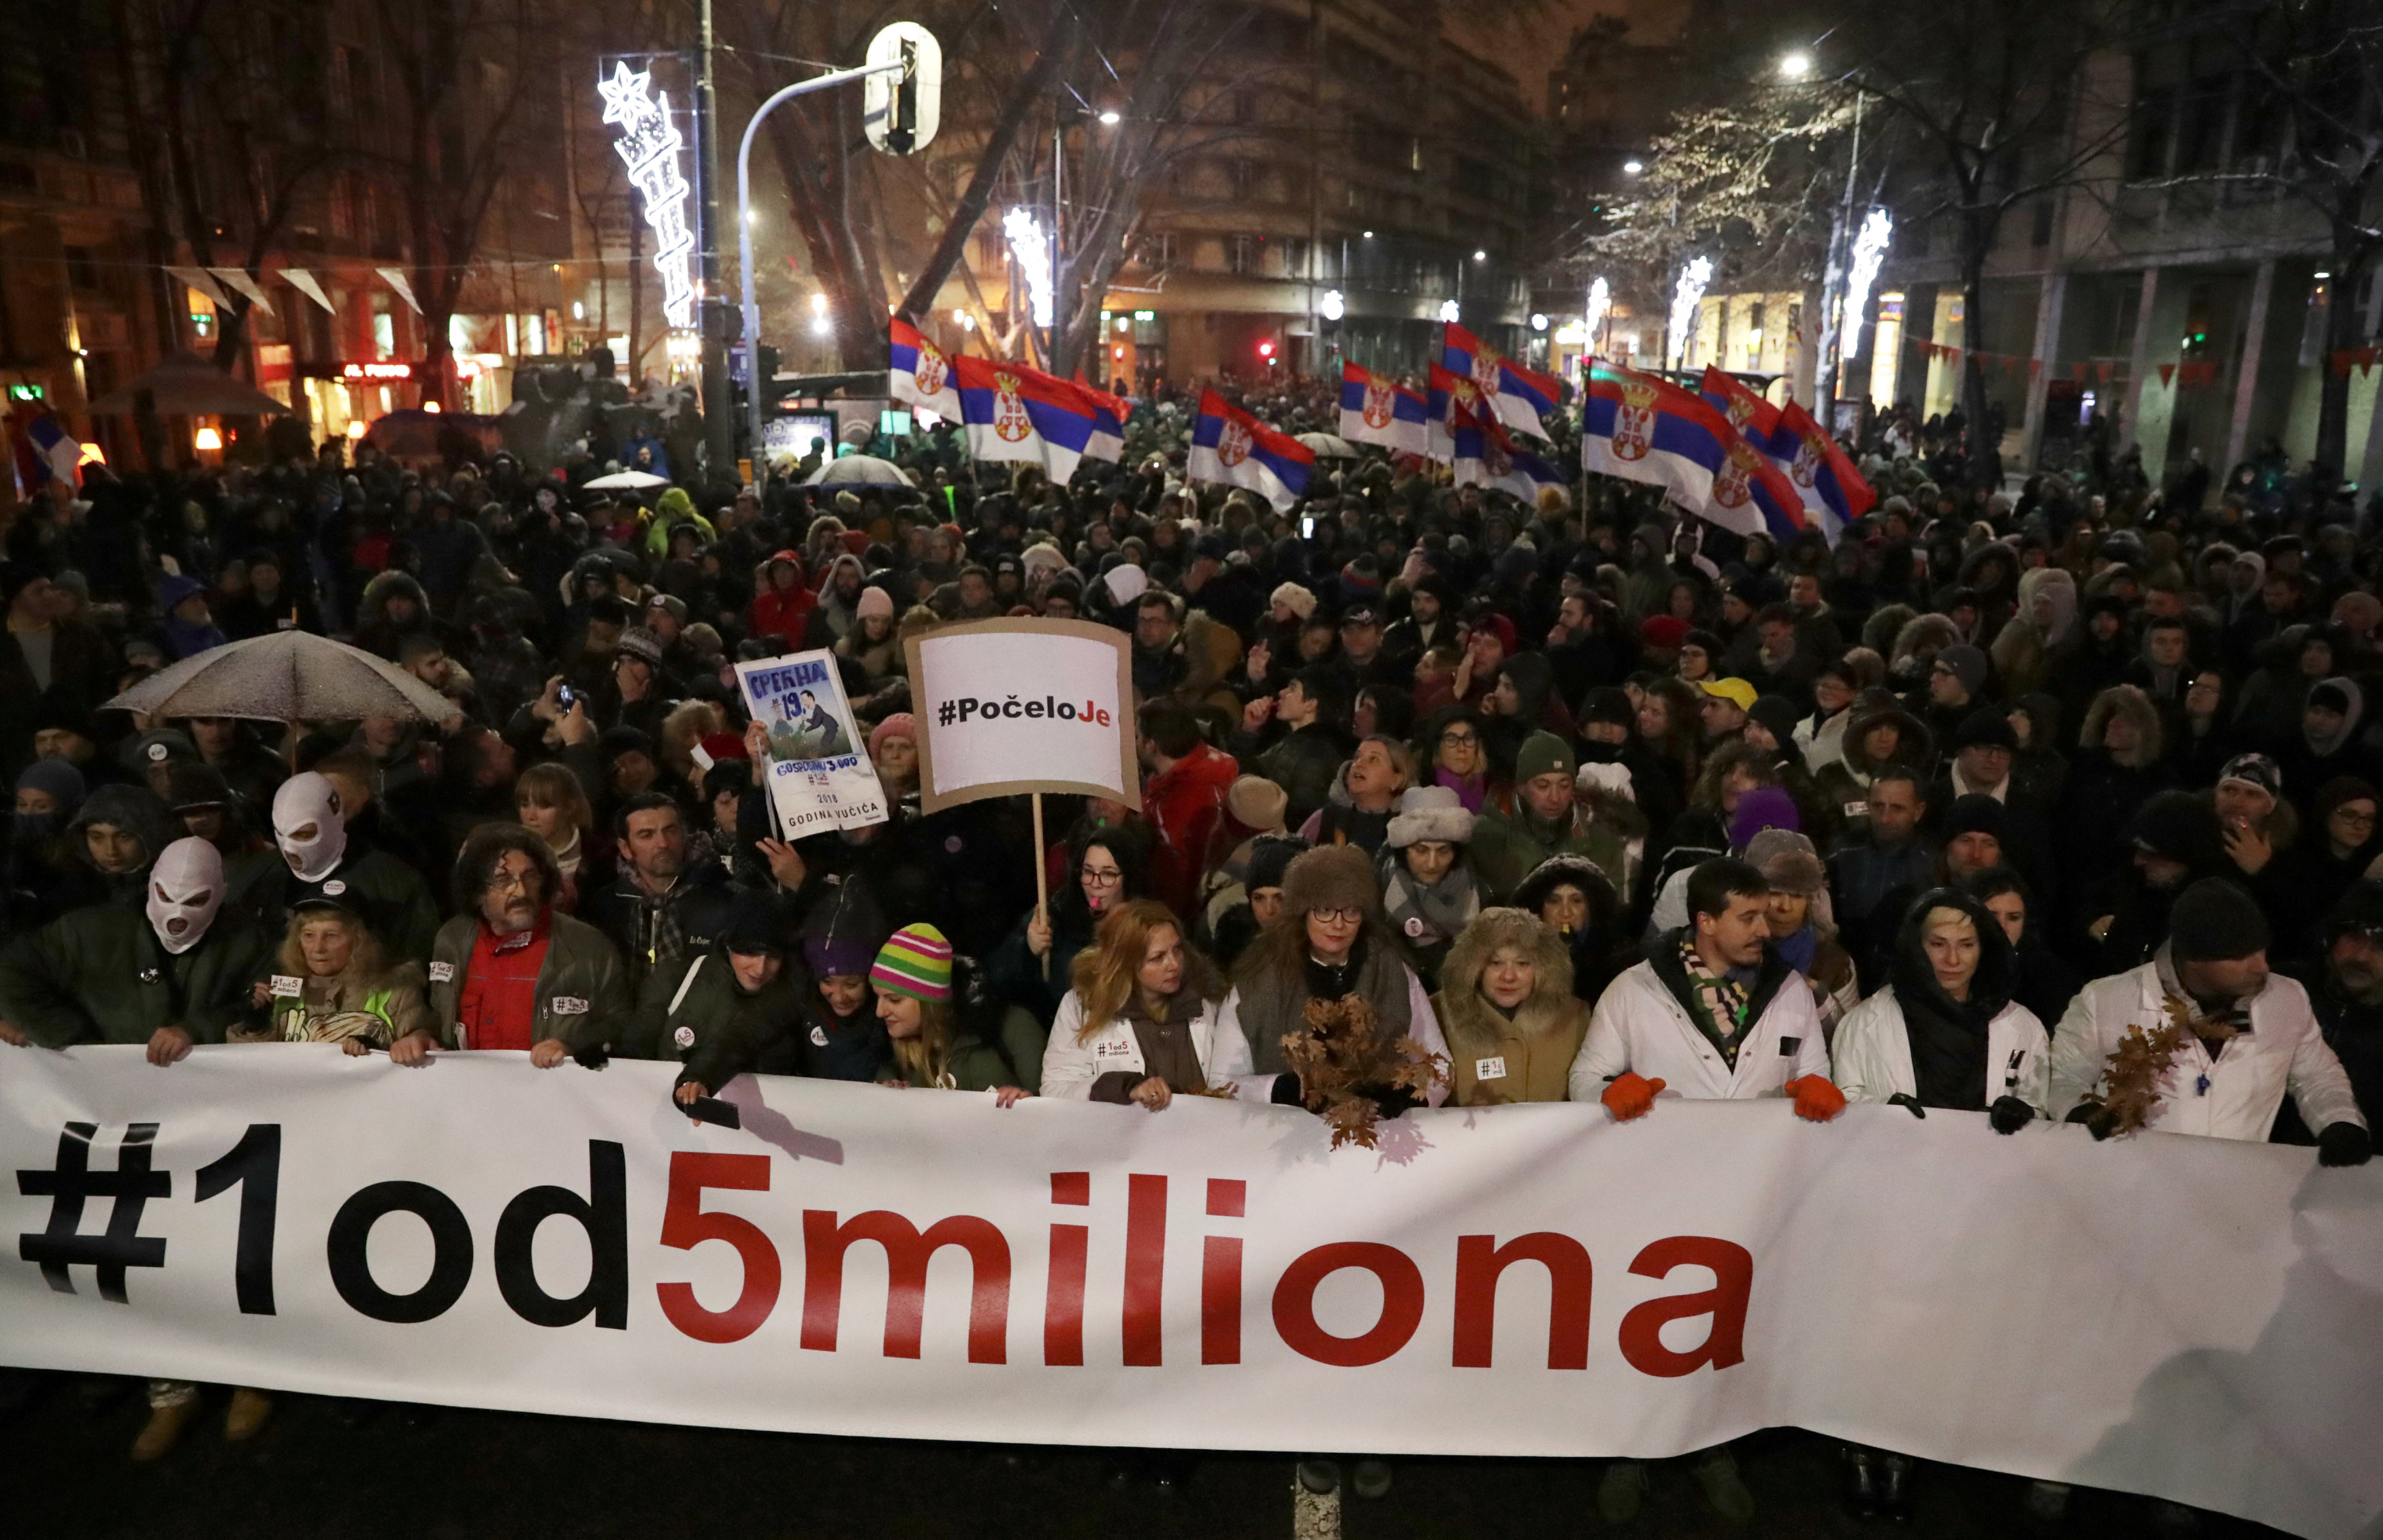    الاحتجاجات الحاشدة ضد الرئيس الصربى فى شوارع بلجراد (9)